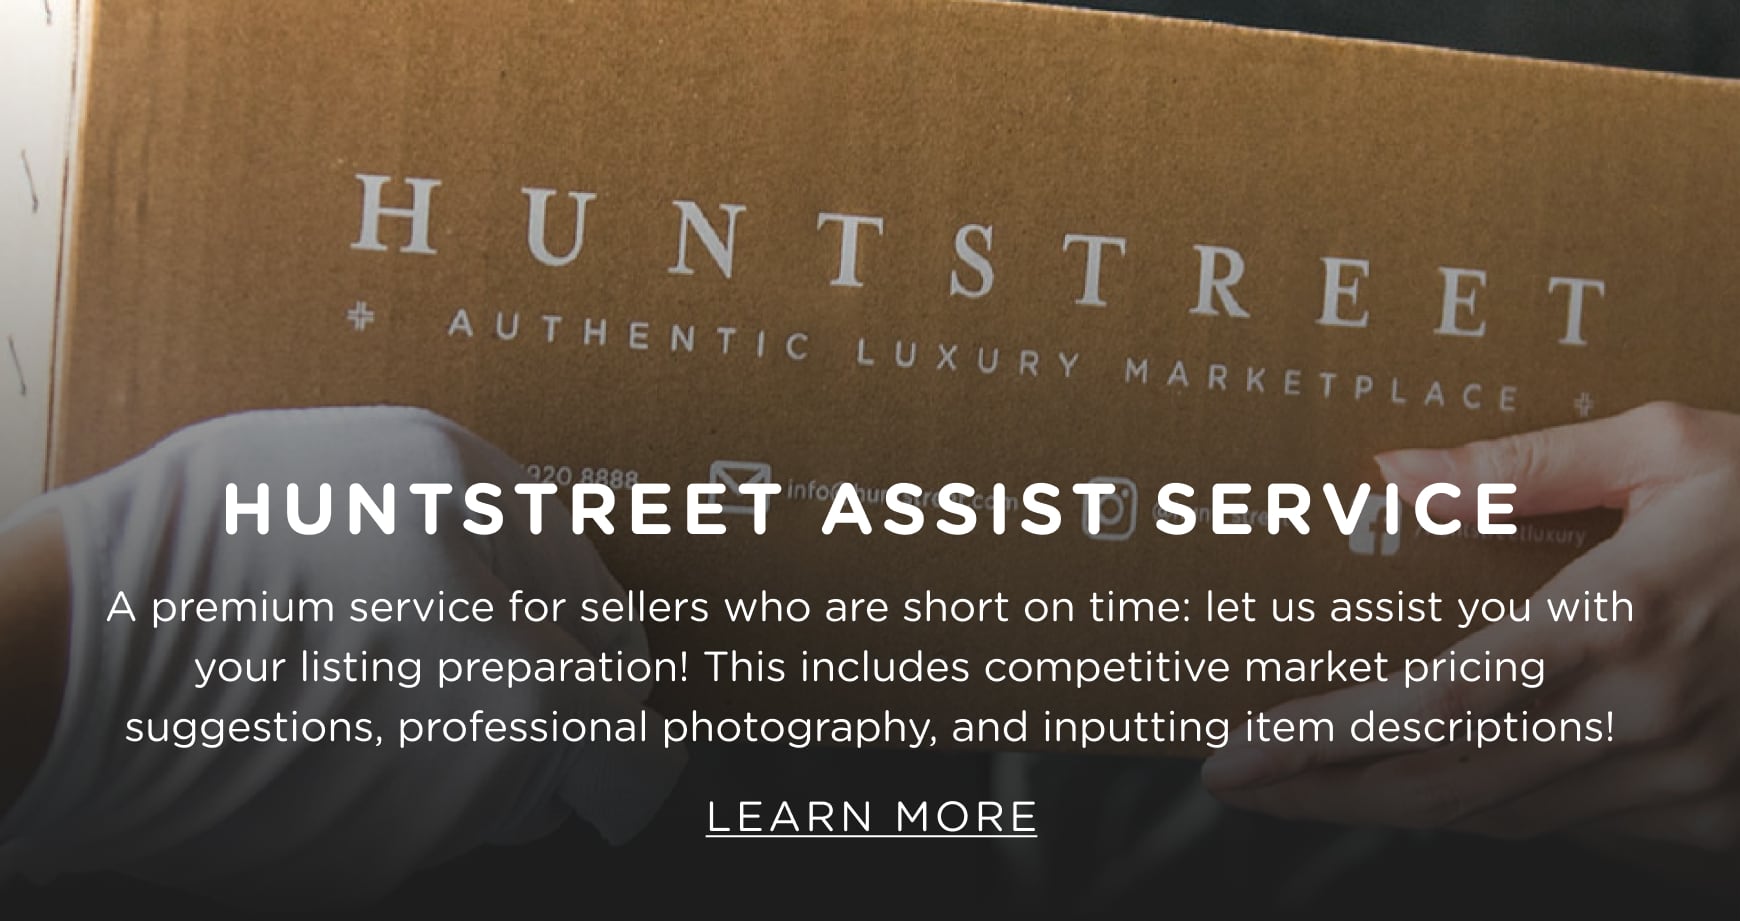 HuntStreet Assist Service